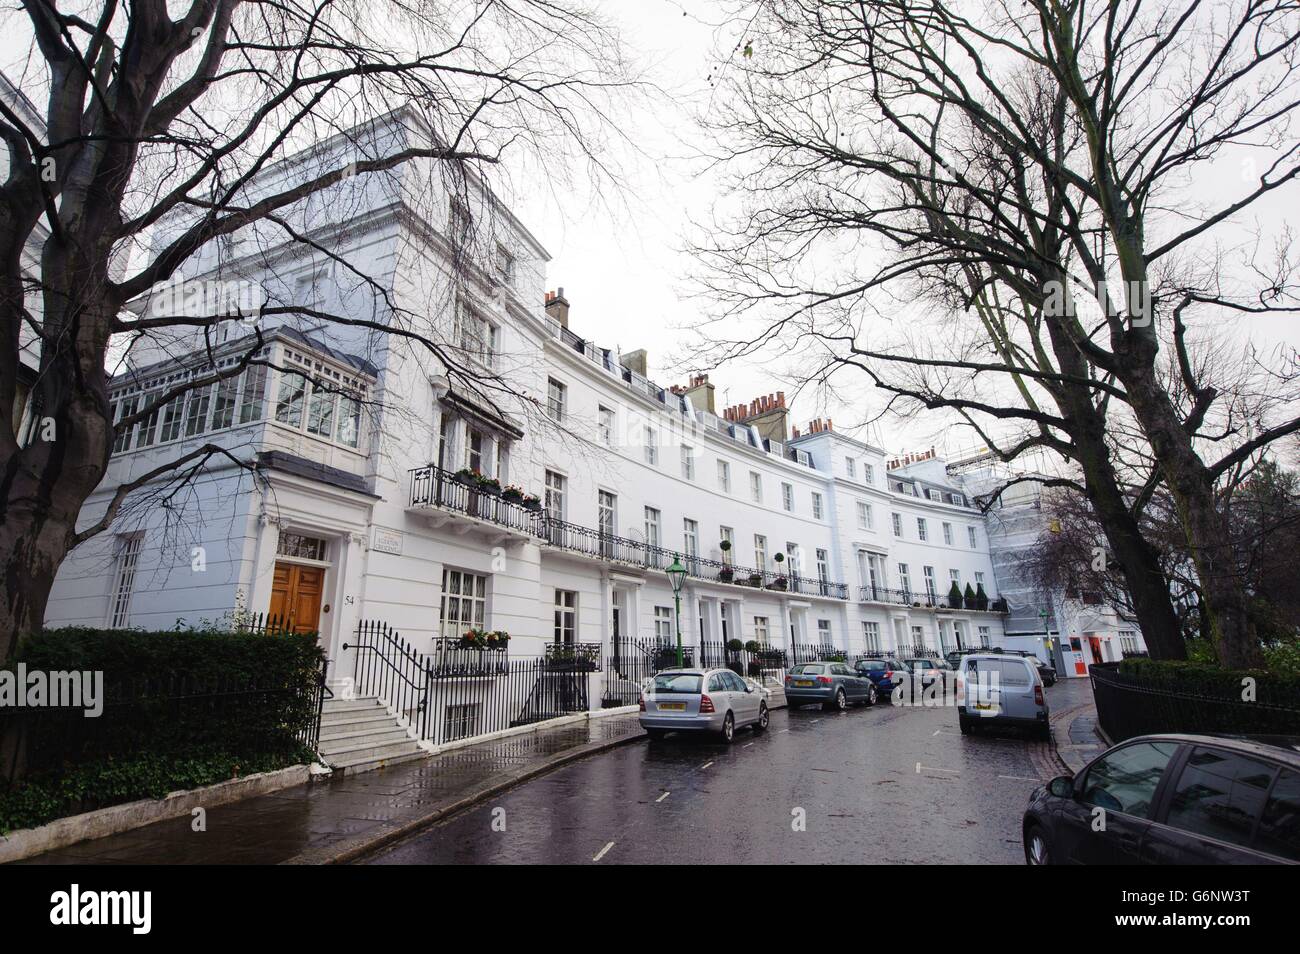 Una visión general de Egerton Crescent, en Kensington, Londres, que fue nombrado como el informe de Lloyds Bank como el lugar más querido para vivir, con el distrito de Kensington y Chelsea hogar de seis de las 10 calles más caras de Inglaterra y Gales. Foto de stock